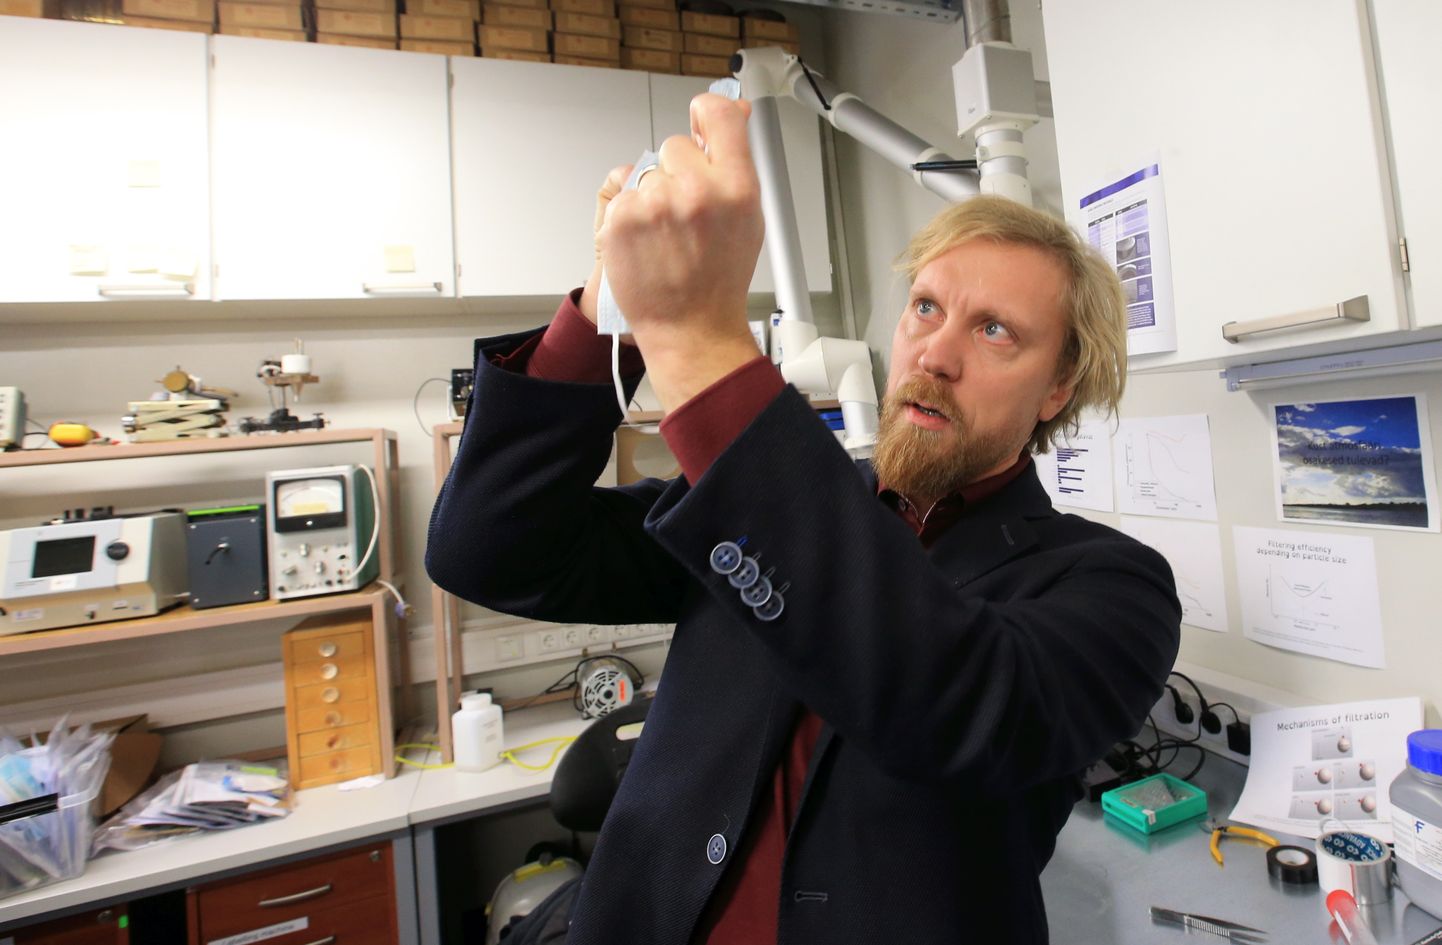 Tartu ülikooli keskkonnafüüsika professor Heikki Junninen takseerib üht meditsiinilise maski filtrit, millest läbi vaadates midagi ei paista - vaid ühtlane piimjas kuma. Ühekordsed meditsiinilised maskid on ühed kõige paremad aerosooliosakeste kinnihoidjad.